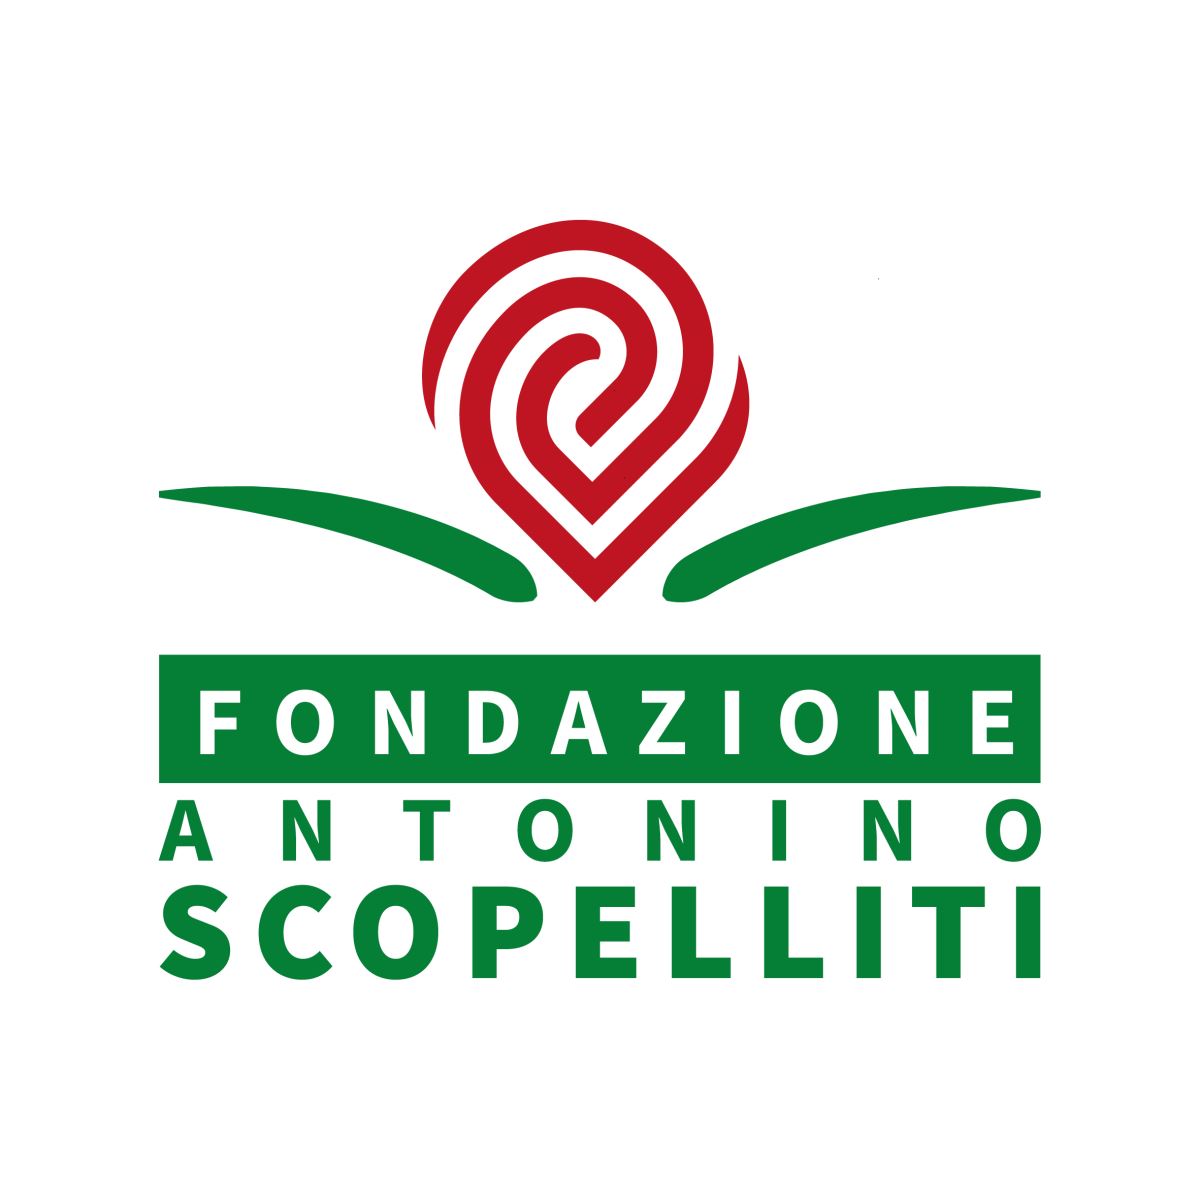 Fondazione Antonino Scopelliti